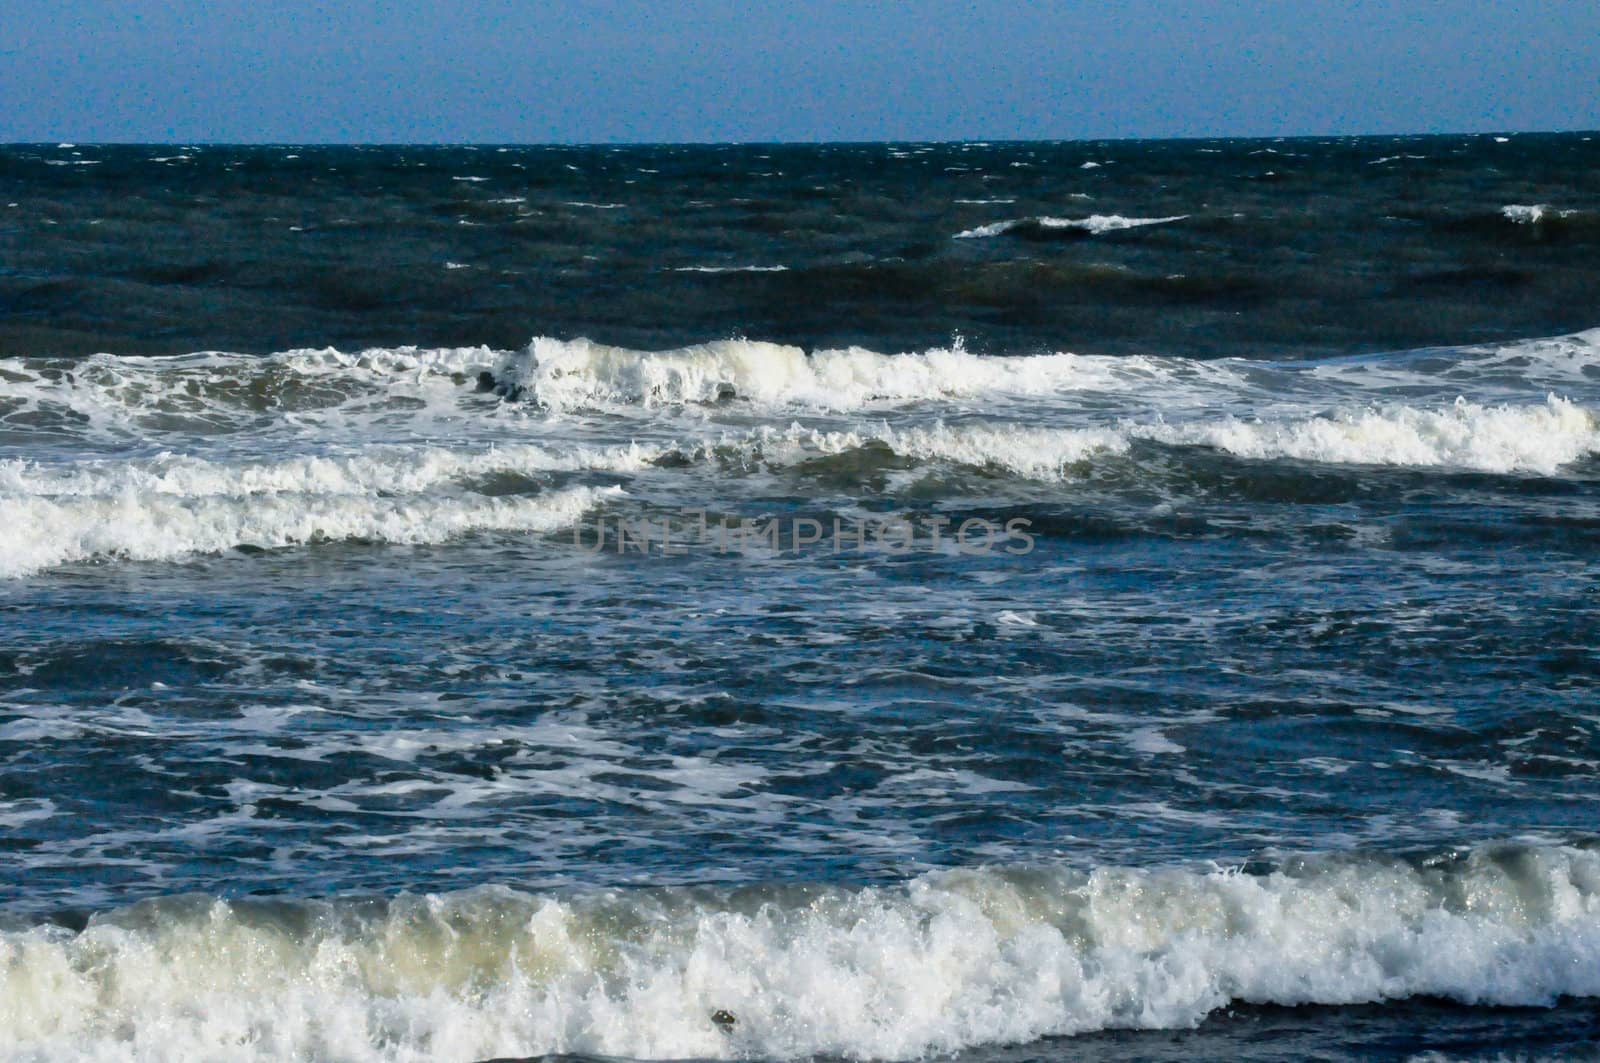 Waves on the ocean by RefocusPhoto